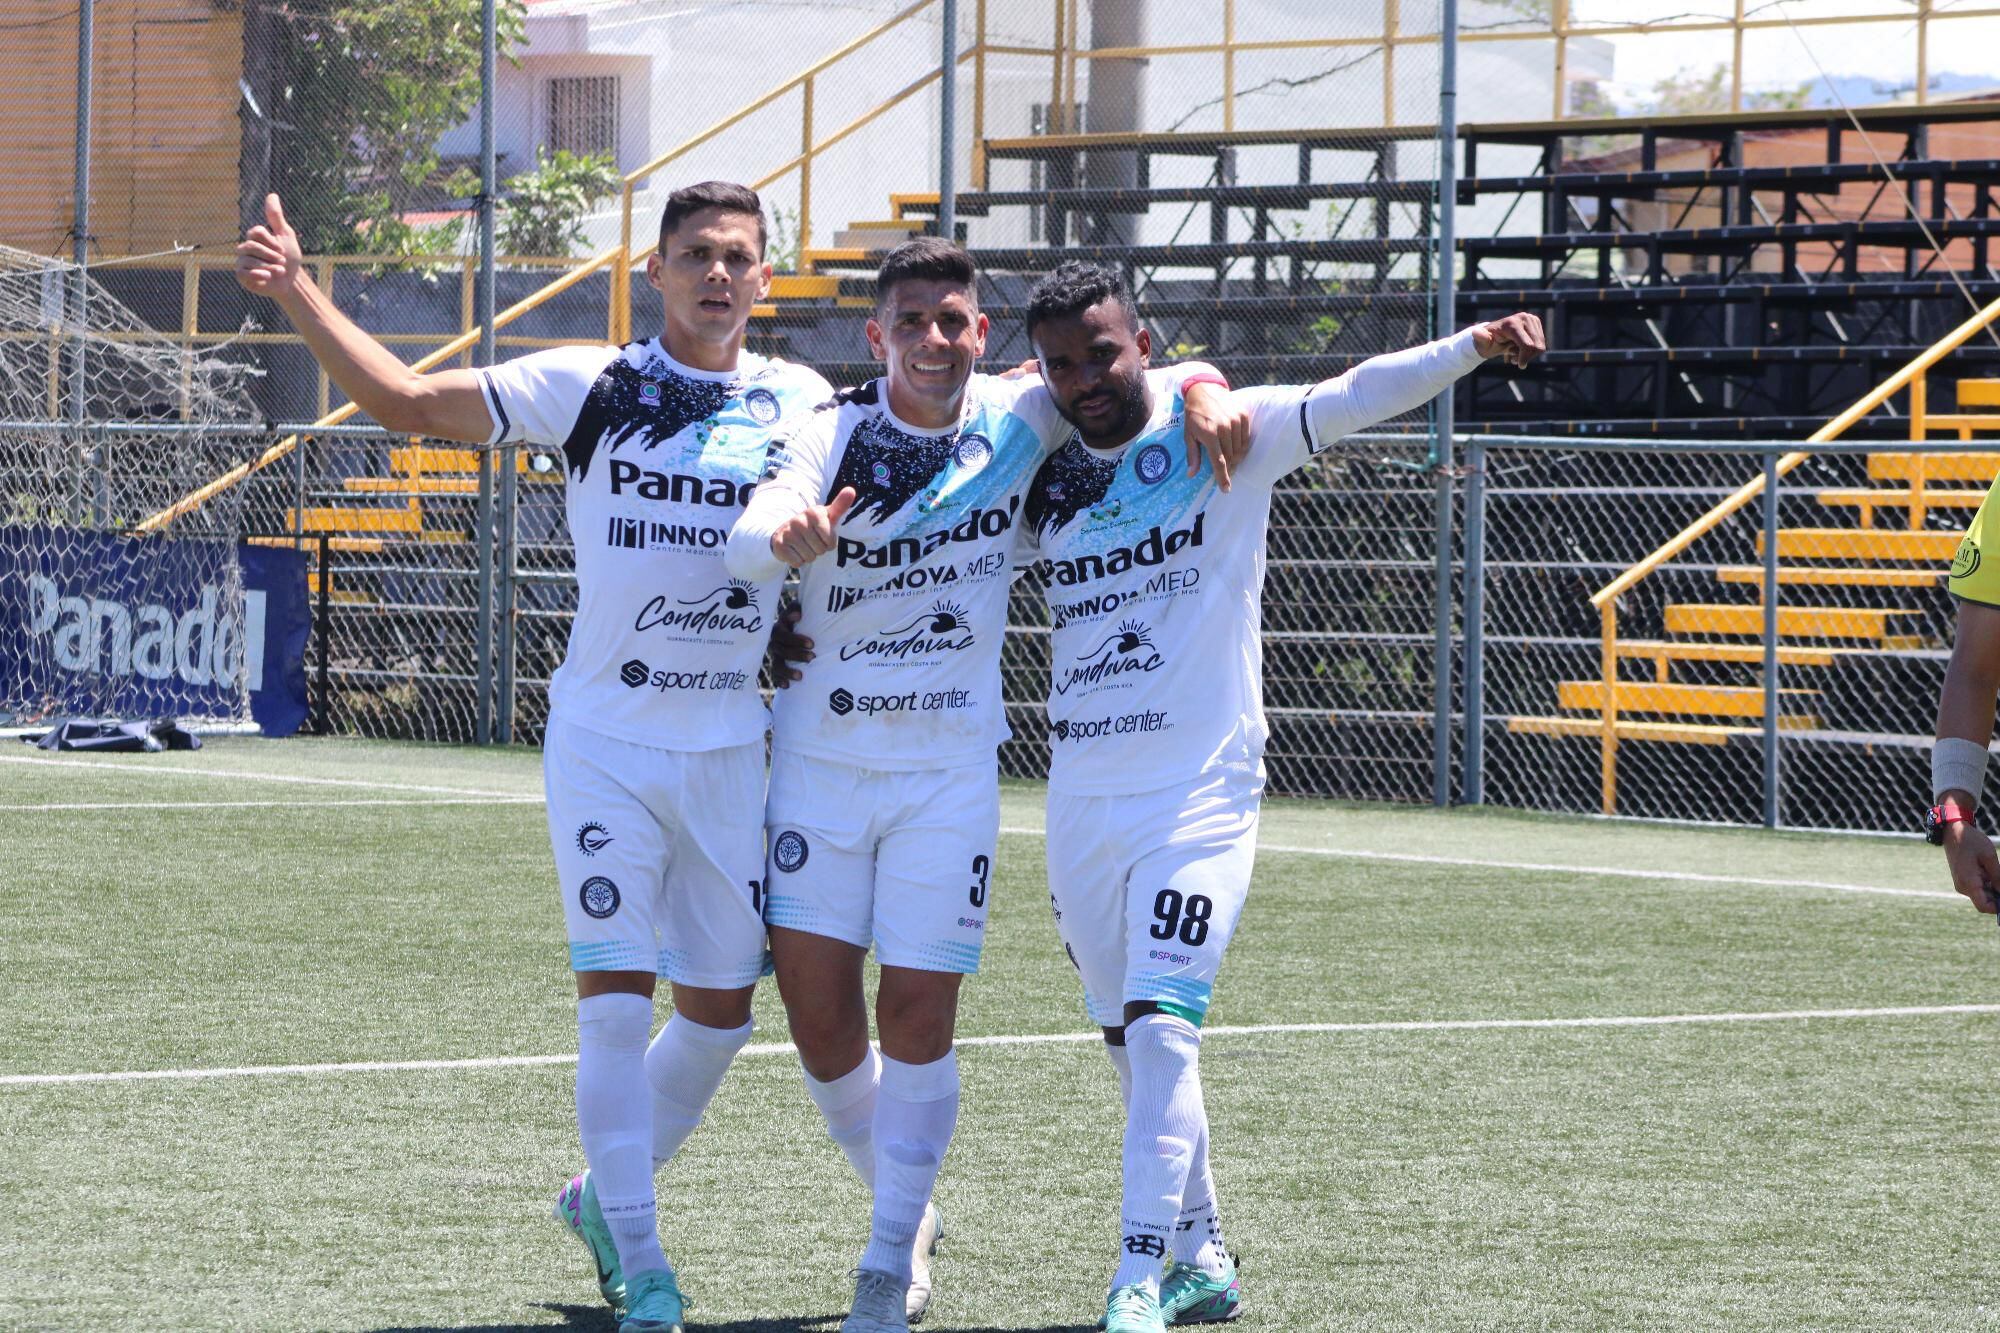 Johnny Acosta, Jonathan Martínez (98) y Erick Zúñiga (12) son parte del equipo de Santa Ana FC que logró su ascenso a la máxima categoría.  Fotografía: Esteban Rodríguez